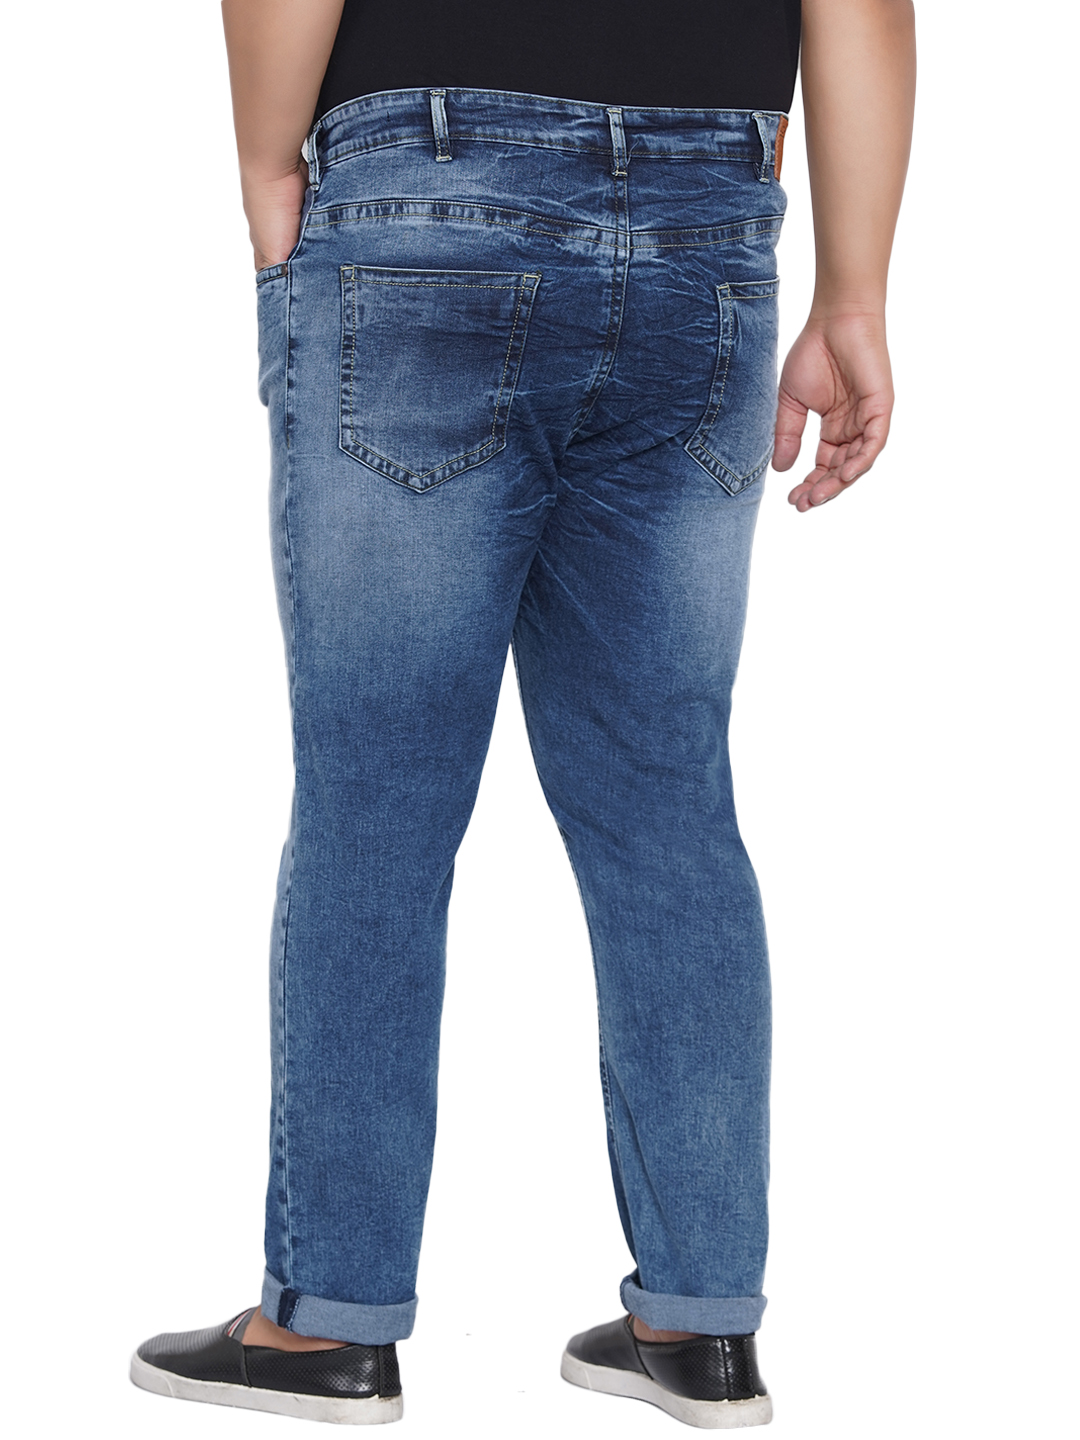 bottomwear/jeans/JPJ12204/jpj12204-5.jpg